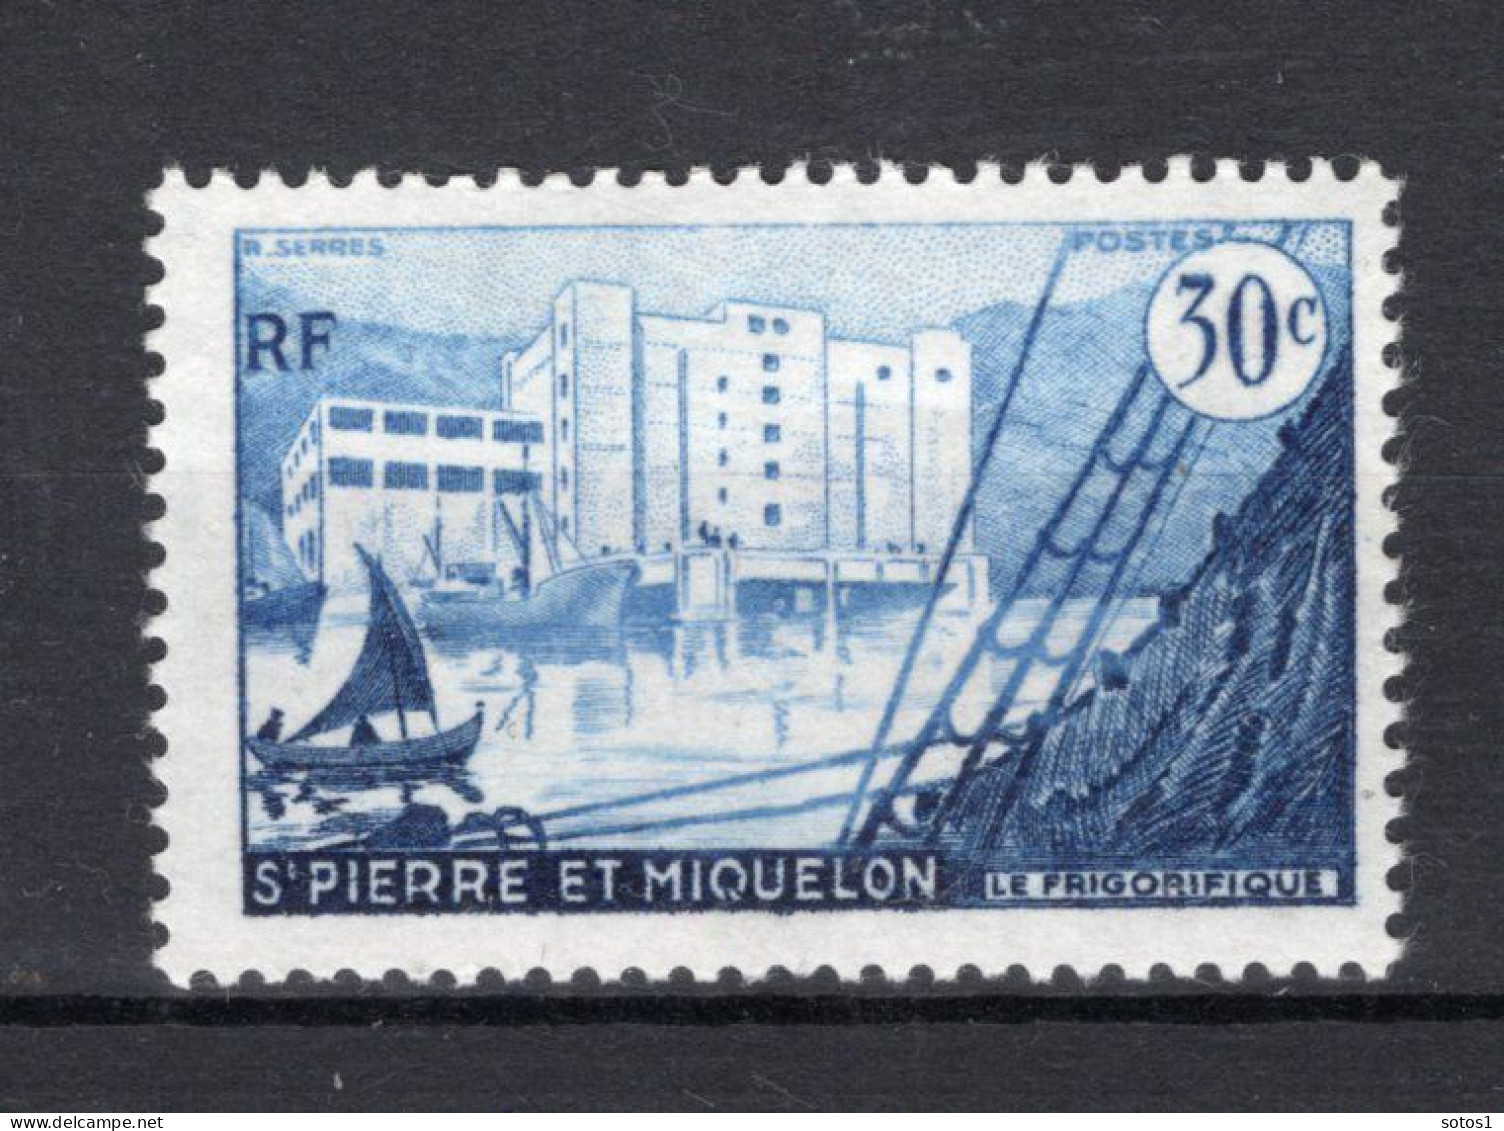 SAINT PIERRE - MIQUELON Yt. 348 MNH 1955-1956 - Nuovi